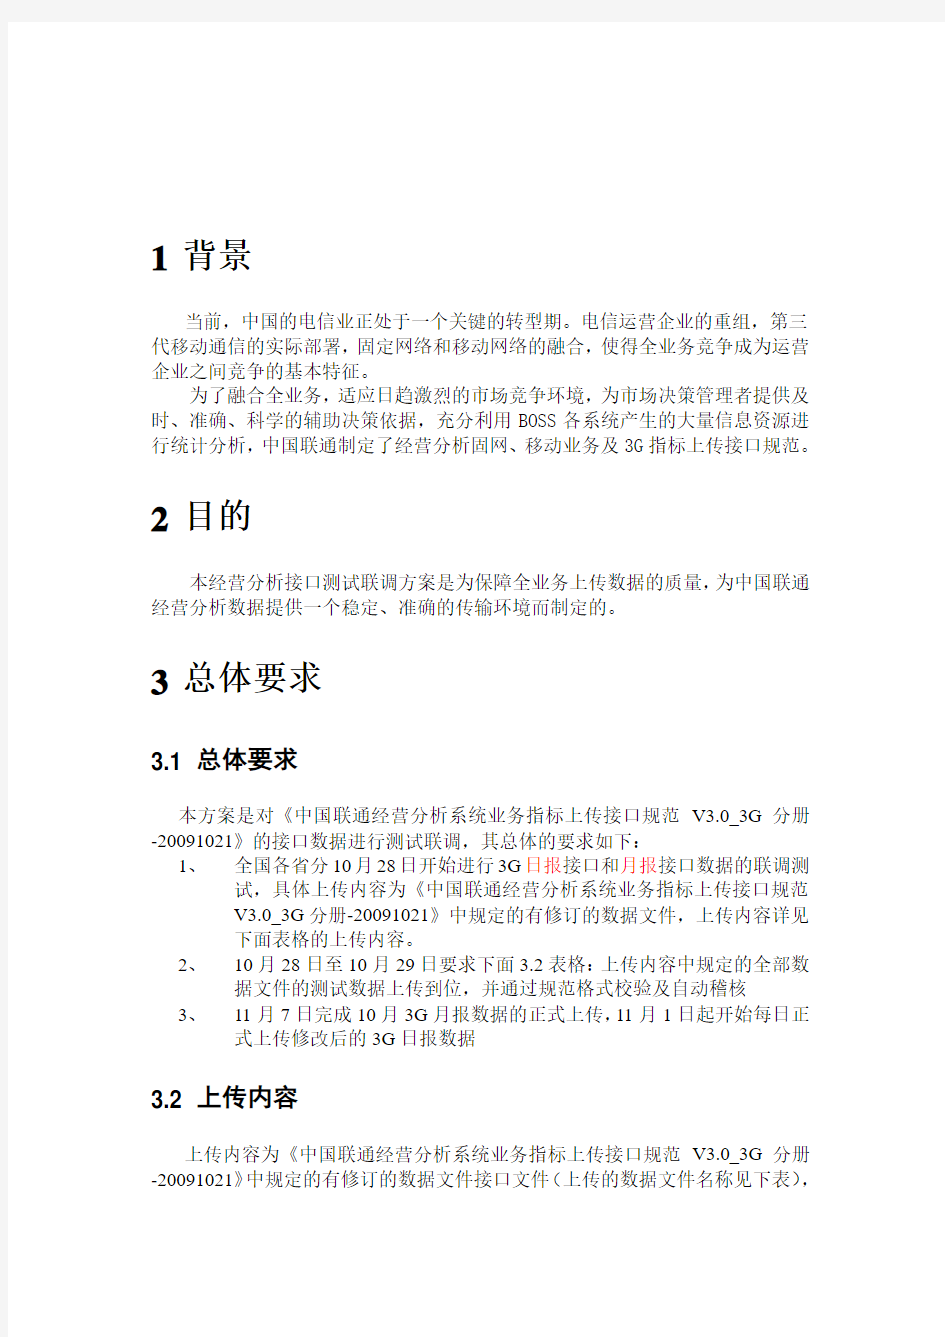 中国联通经营分析3G接口测试联调方案V11-20091021